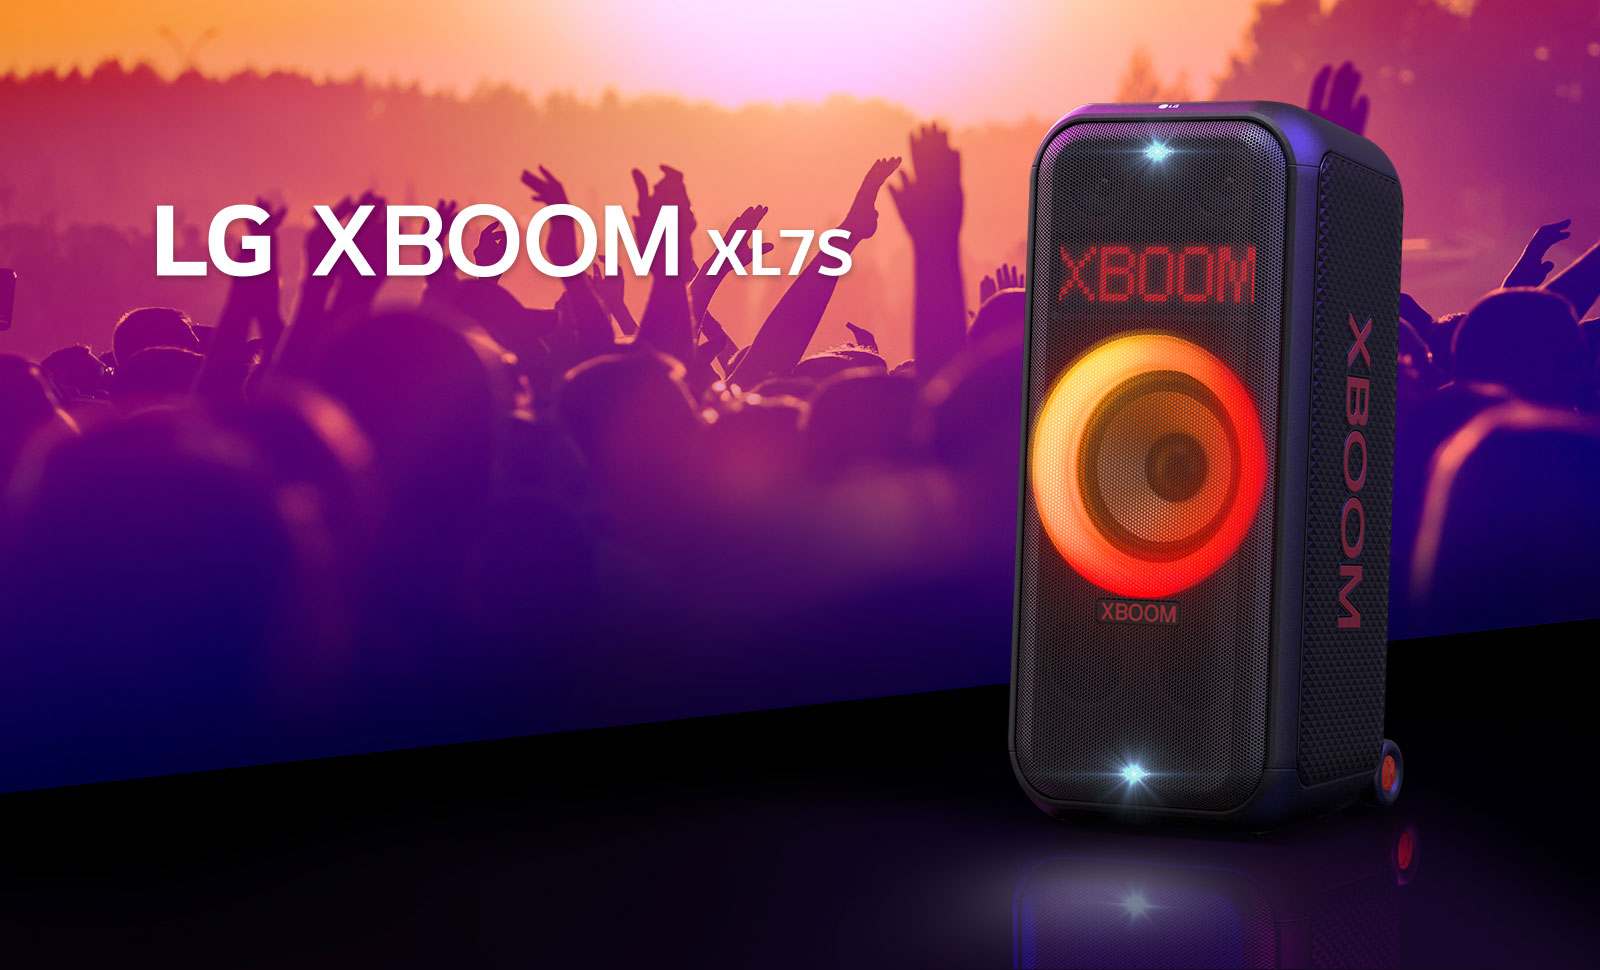 تم وضع XBOOM XL7S من LG على المسرح مع إضاءة متدرجة باللون الأحمر البرتقالي. خلف المسرح، يستمتع الناس بالموسيقى.